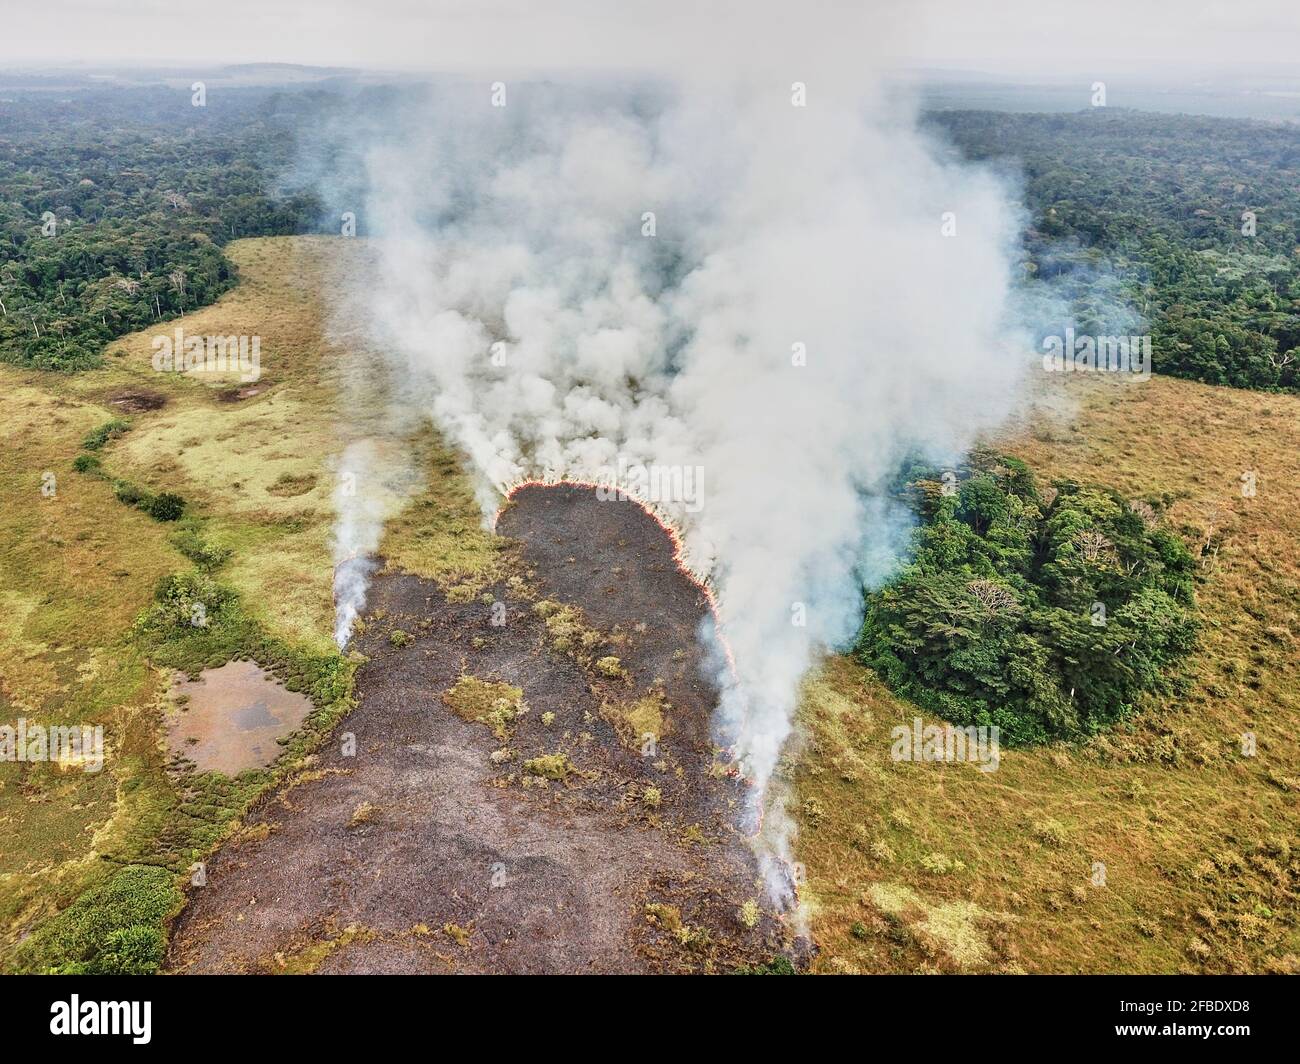 Gabon, vue aérienne du feu de forêt contrôlé Banque D'Images